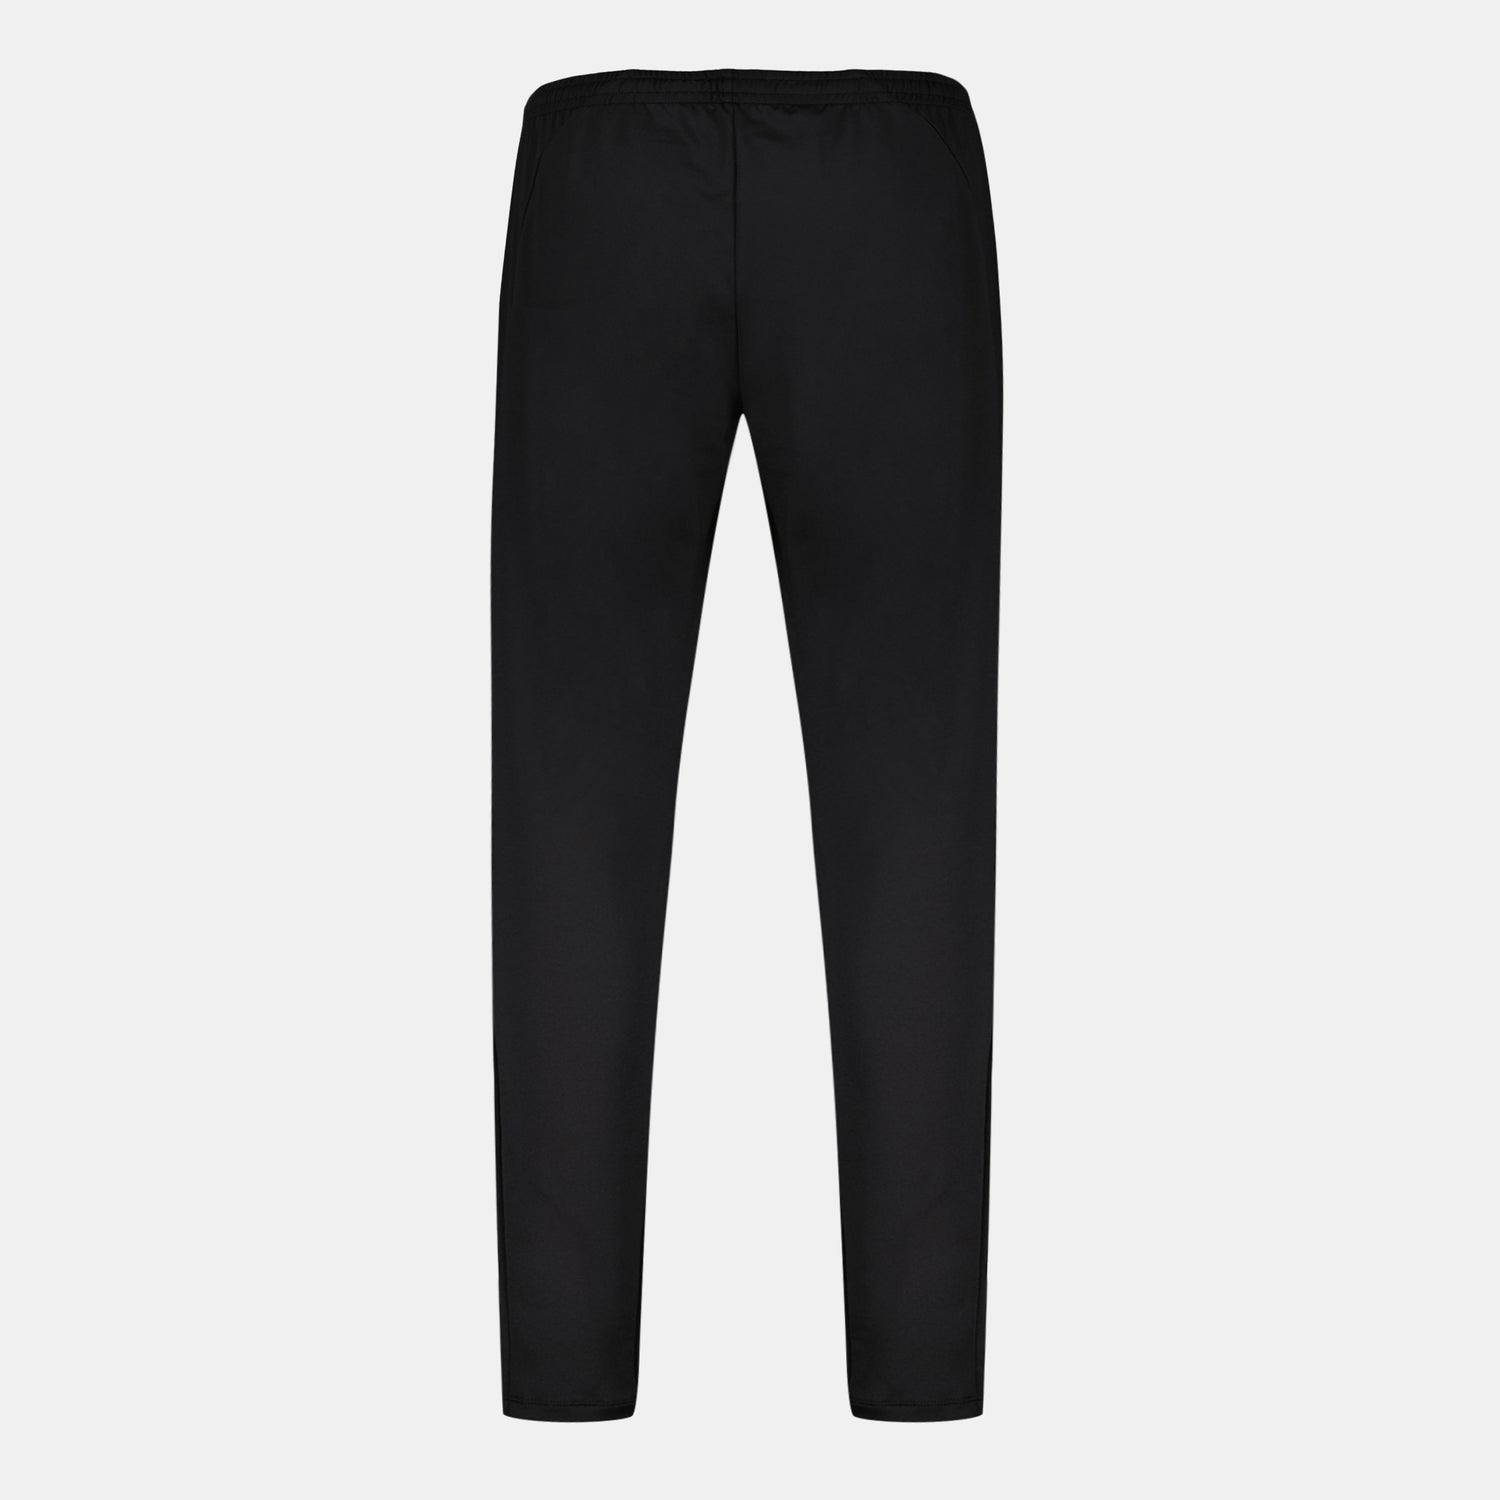 2321090-TRAINING LF Pant Carotte N°1 W black  | Trousers de sport coupe carotte for women